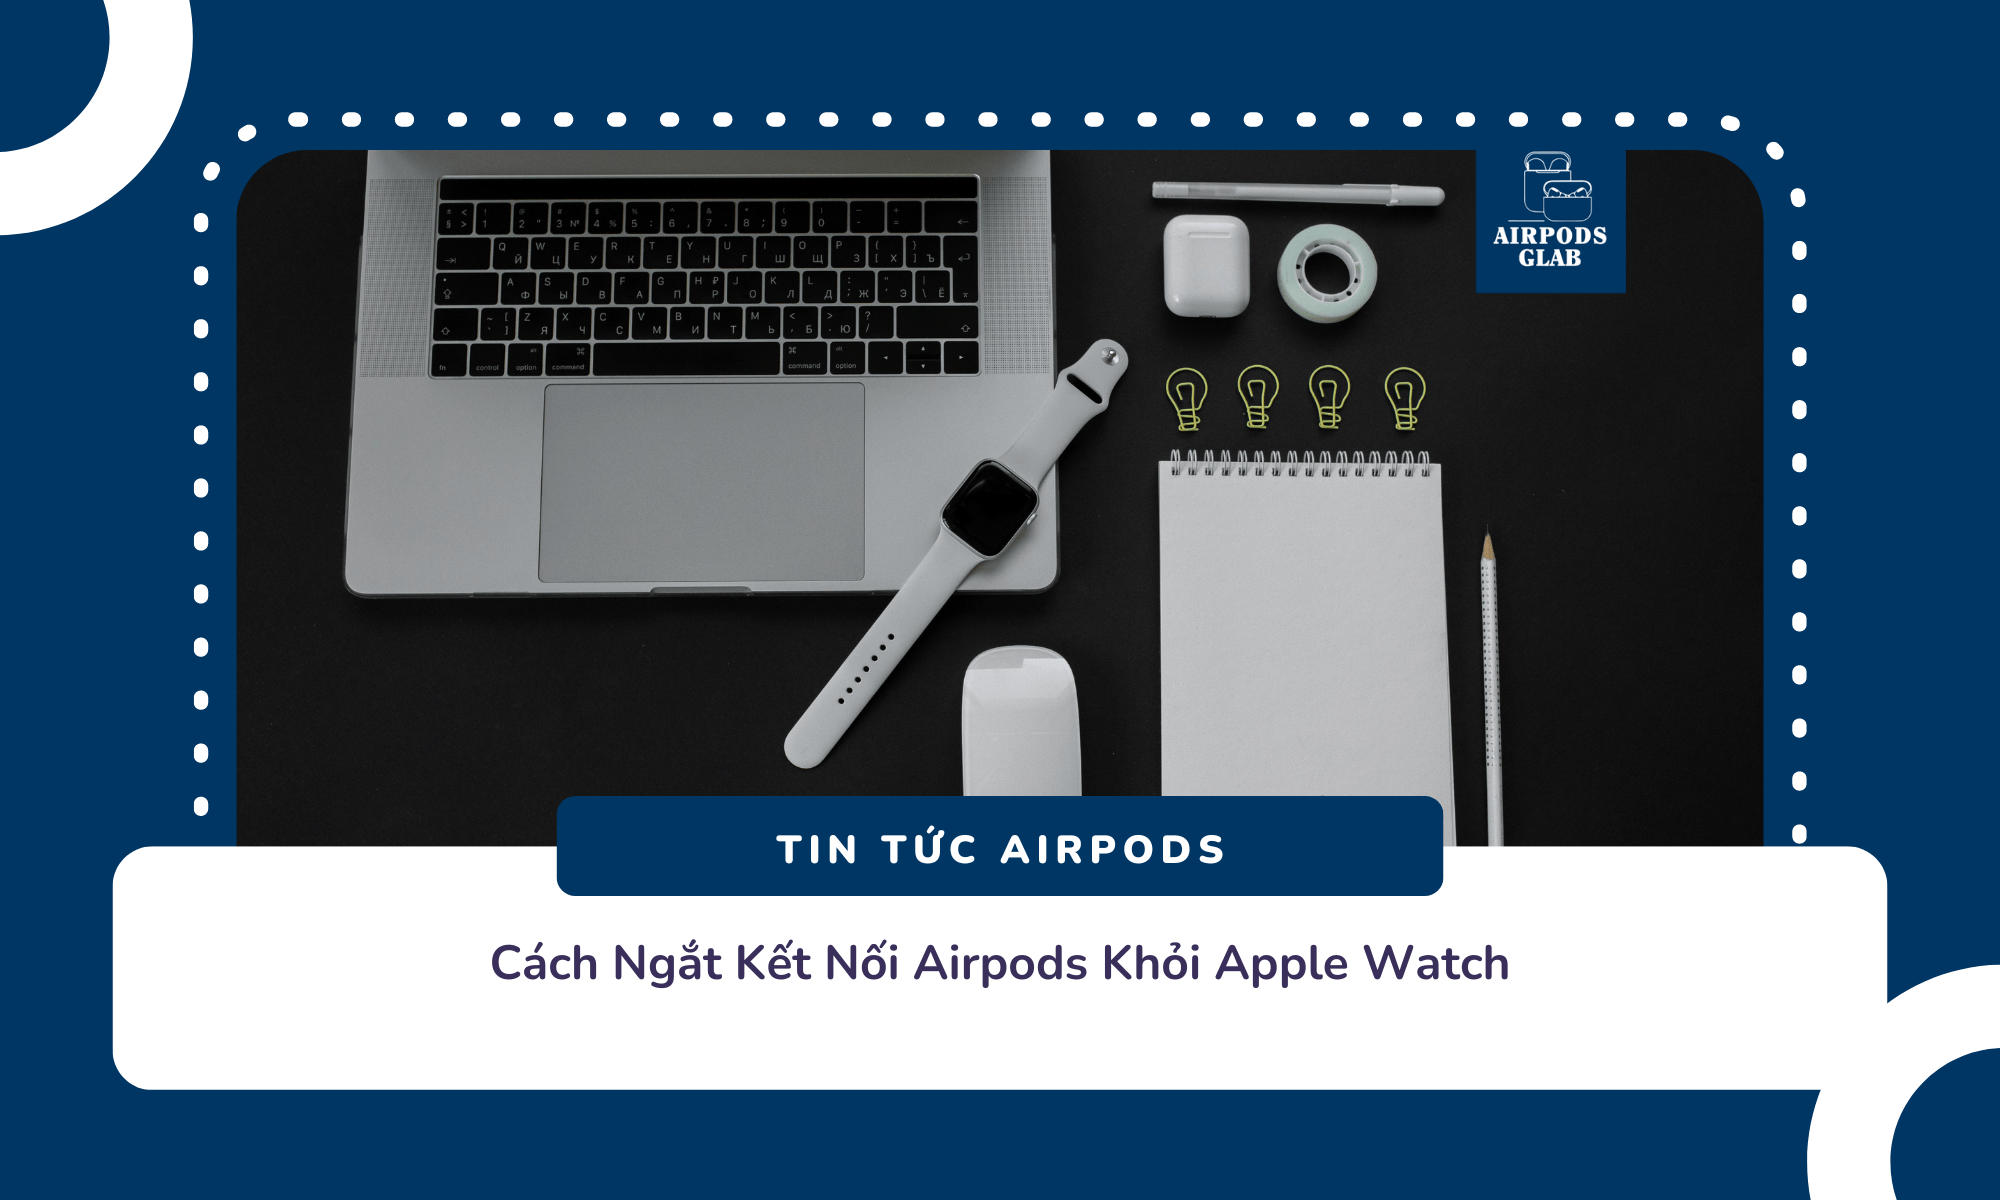 airpods-ket-noi-voi-apple-watch